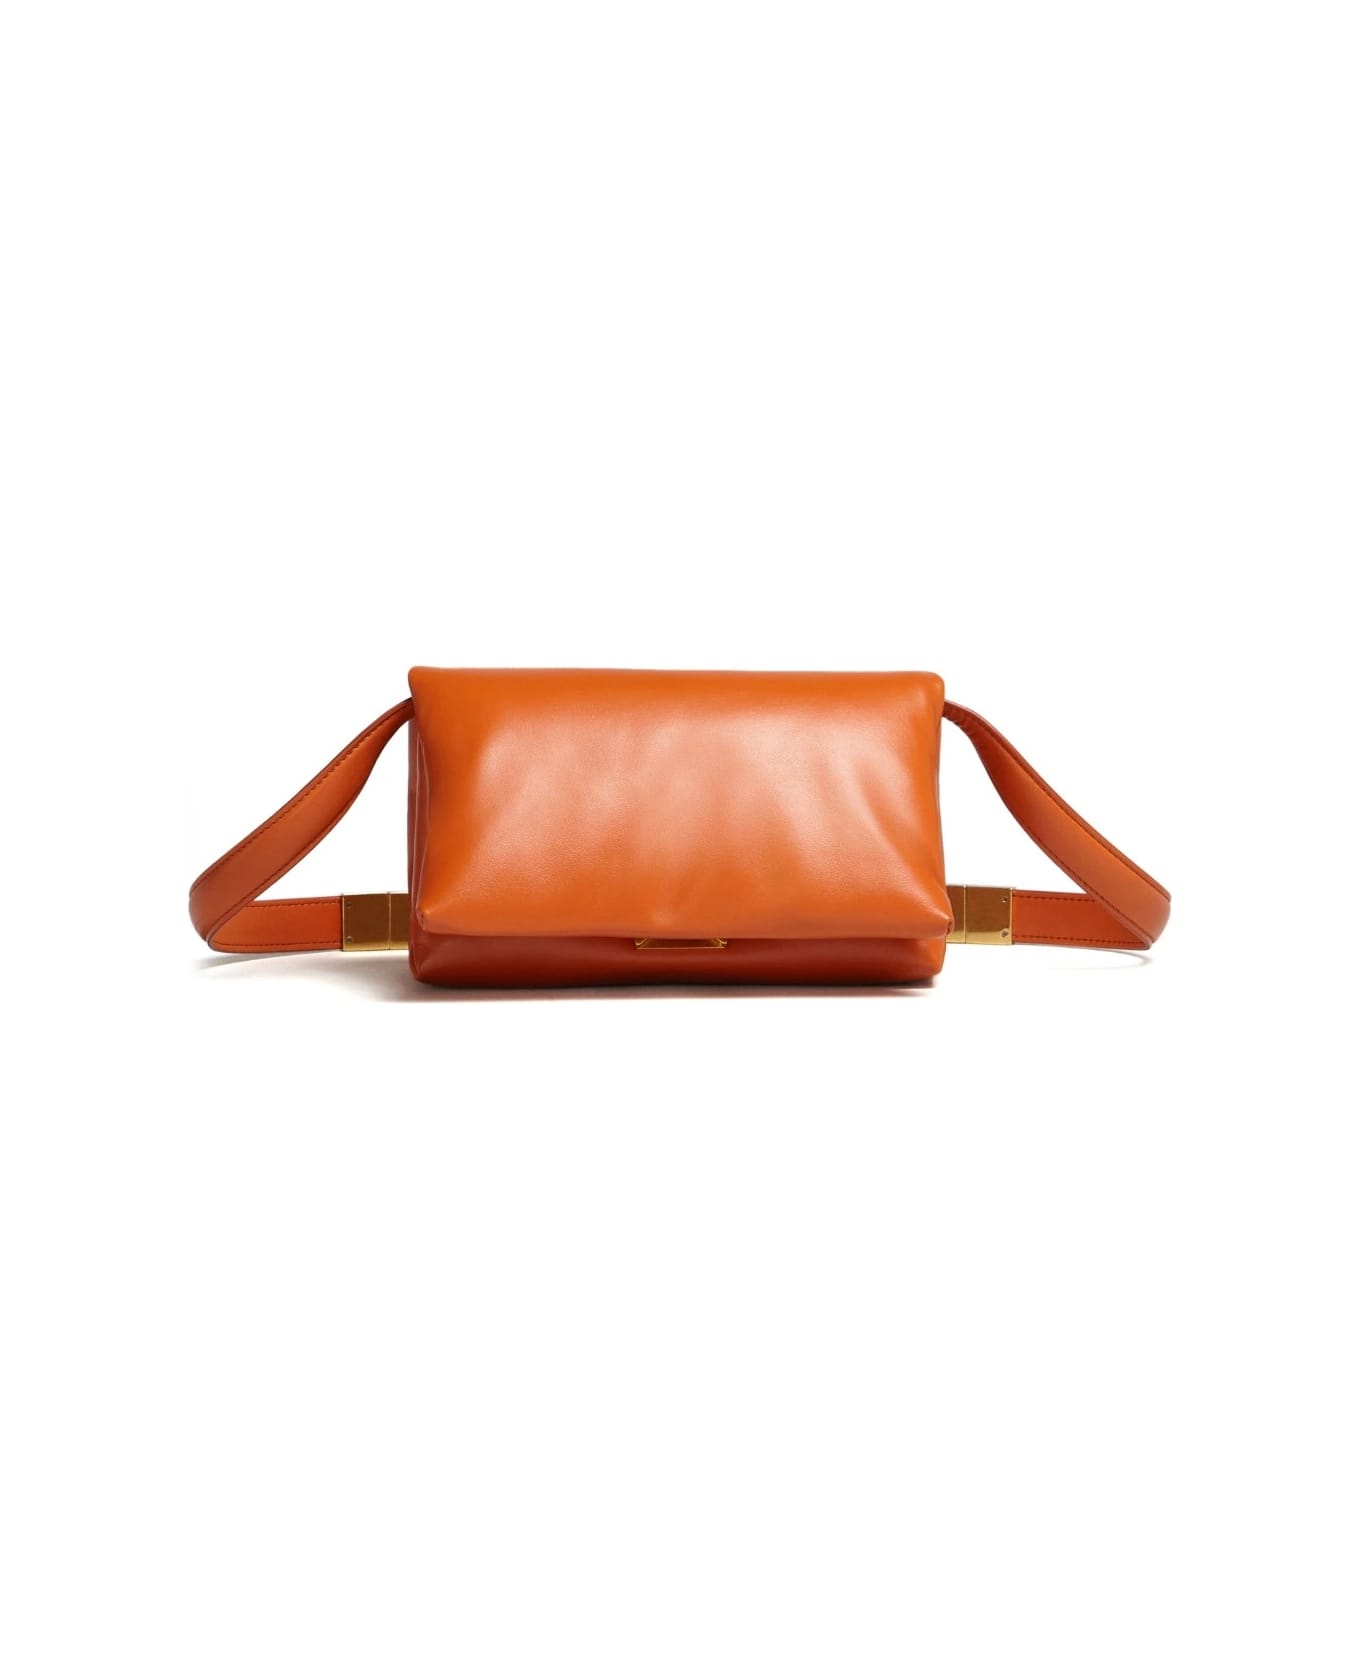 Marni Small Prisma Bag In Orange Leather - Arancione